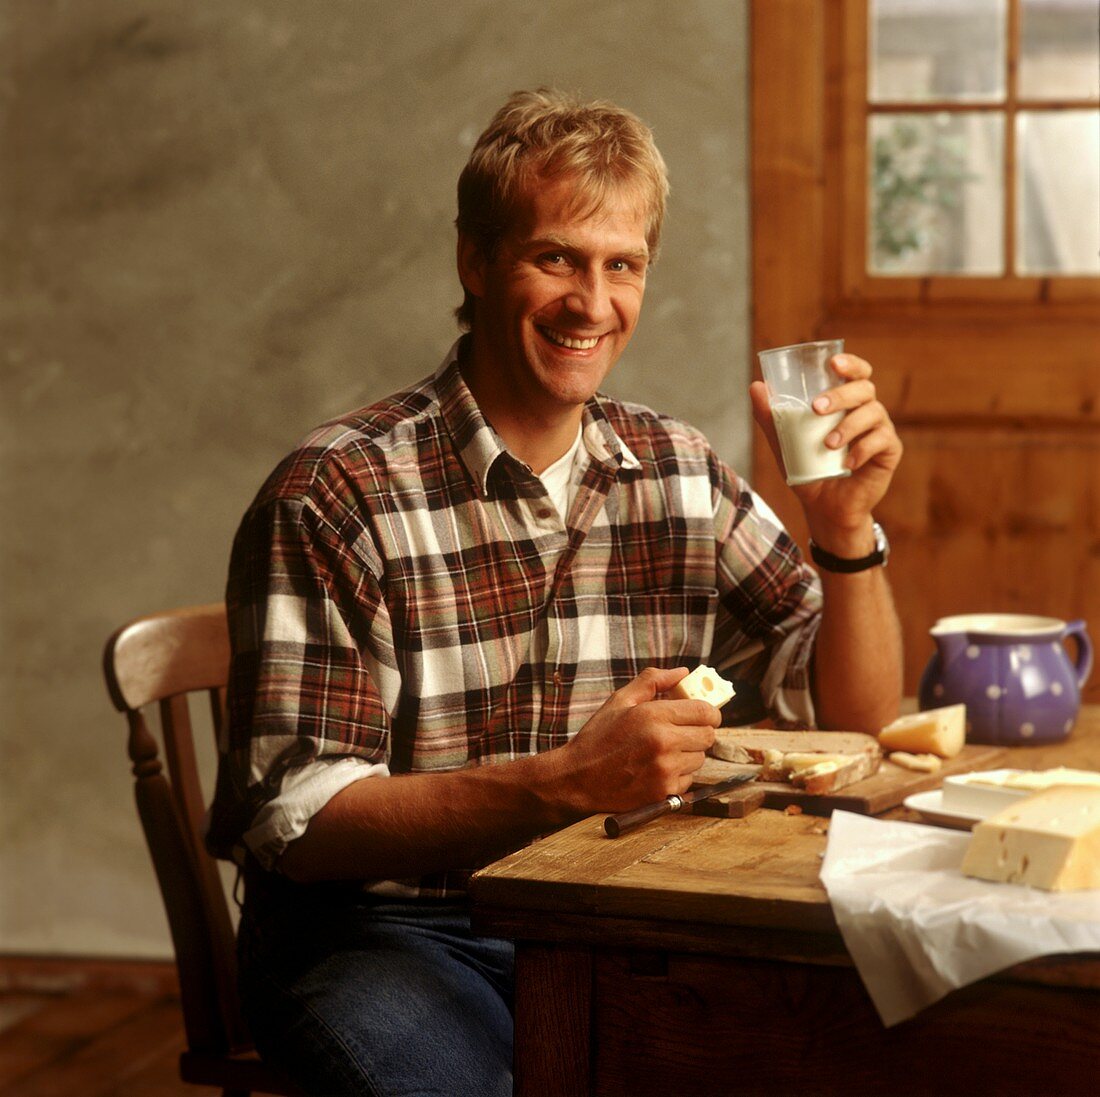 Mann beim Frühstück mit Käse und Milch